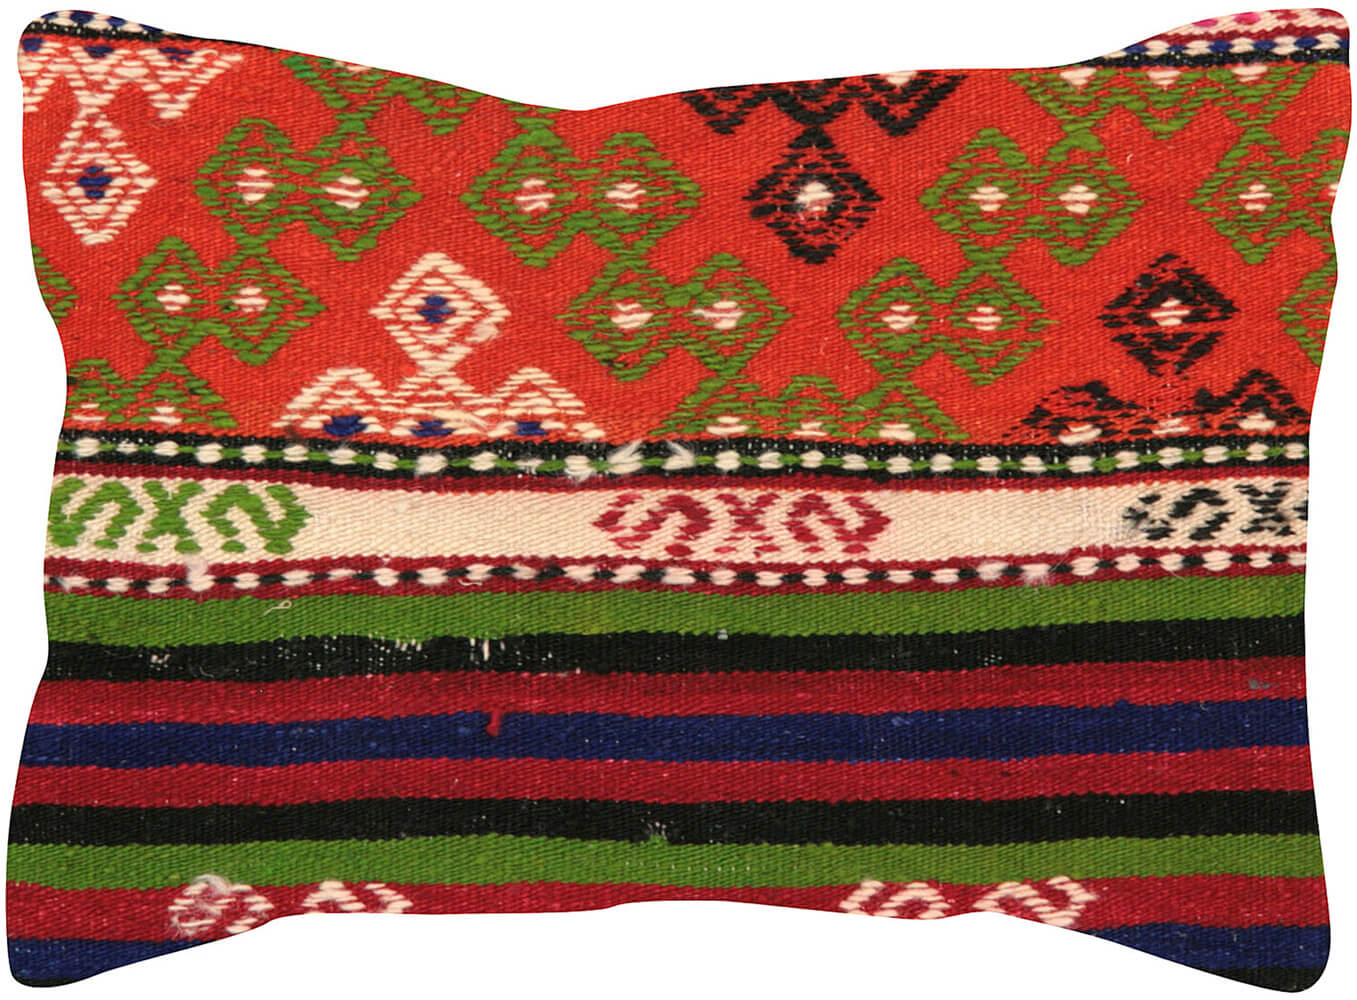 Vintage Turkish Jijim Pillow - 14" x 20"